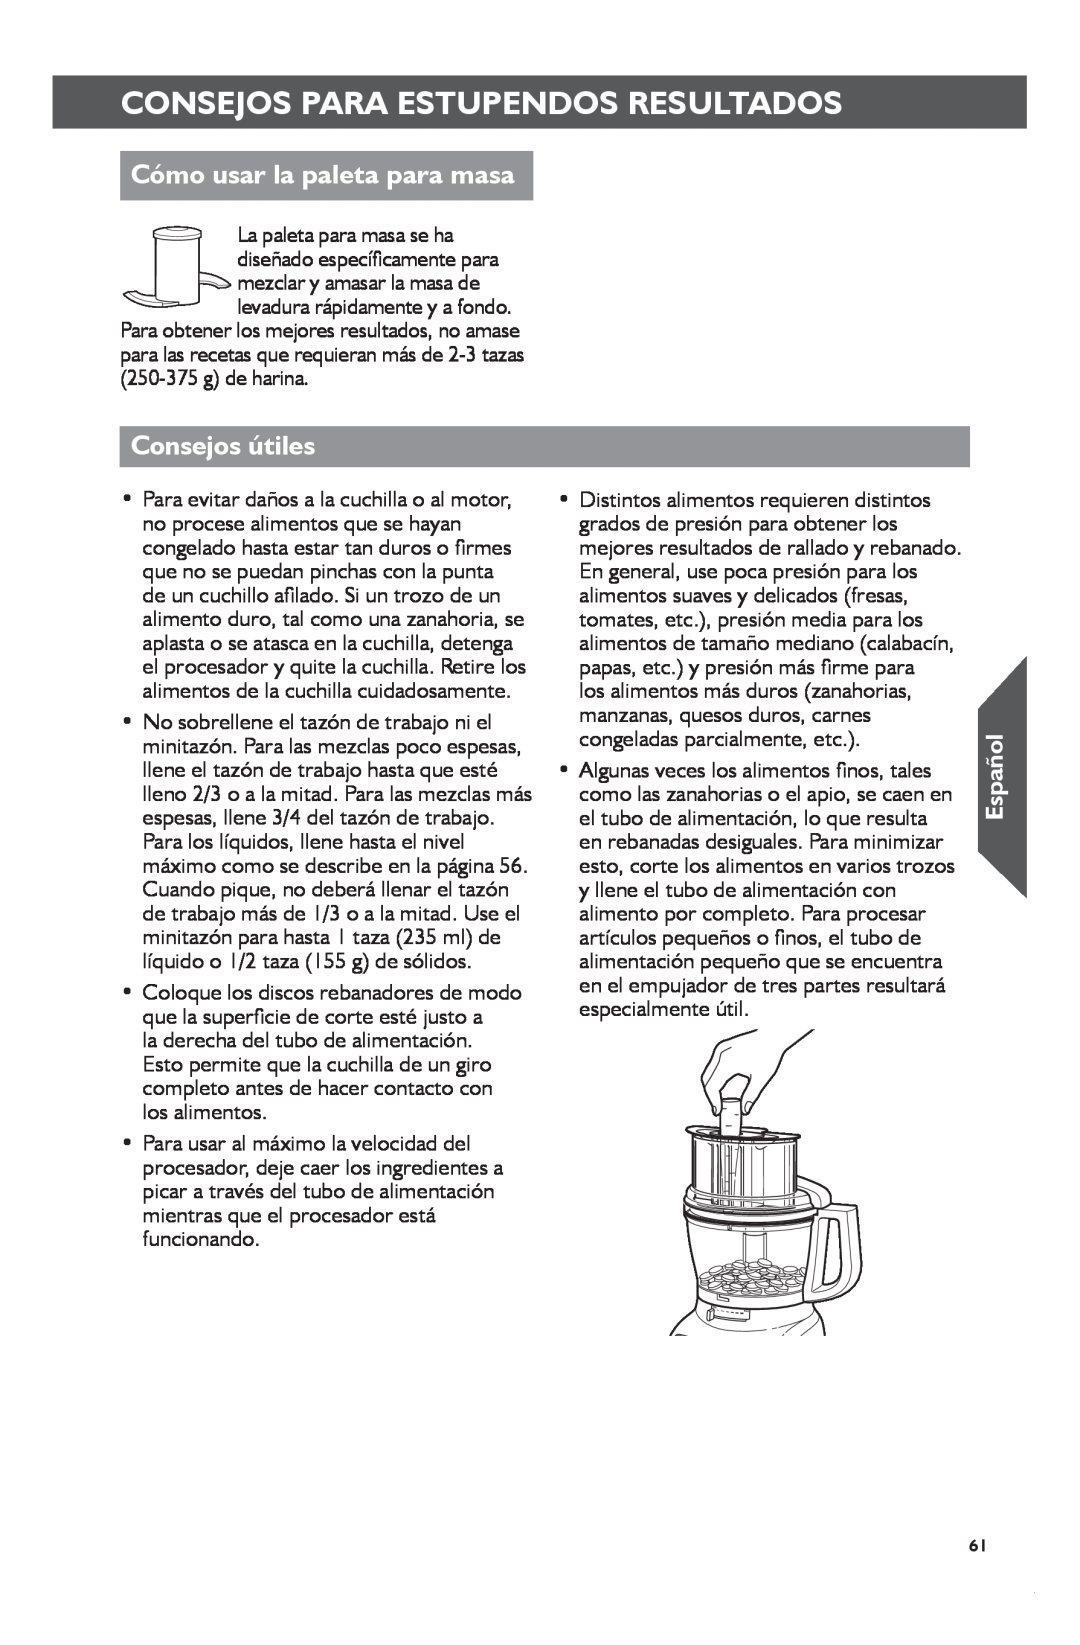 KitchenAid KFP1133 manual Cómo usar la paleta para masa, Consejos útiles, Consejos Para Estupendos Resultados, Español 